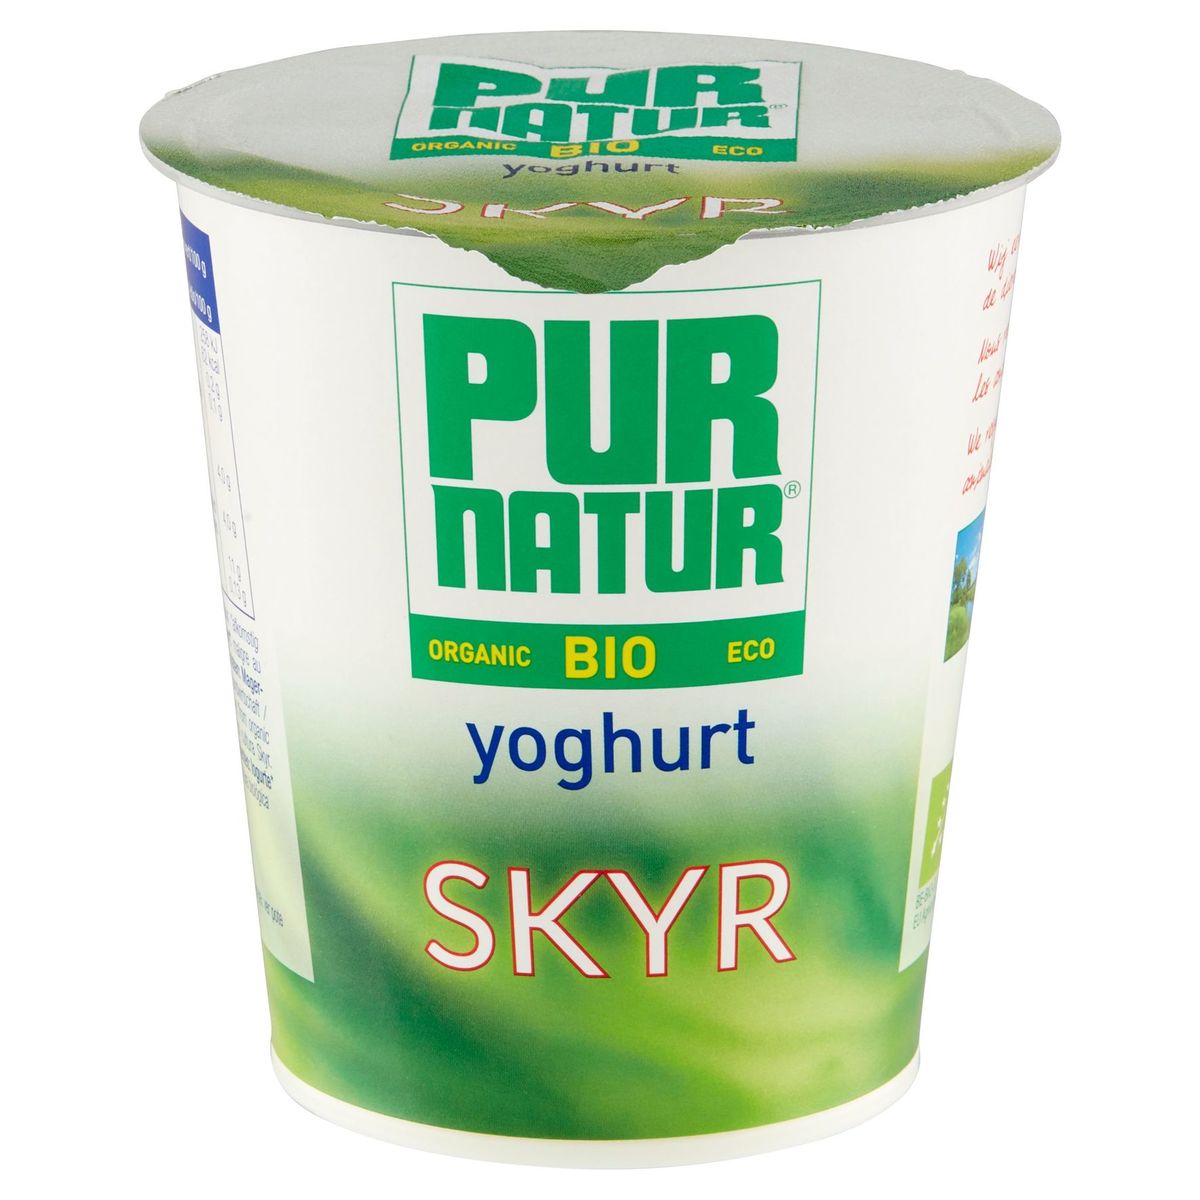 Pur Natur Bio Yoghurt Skyr 400 g